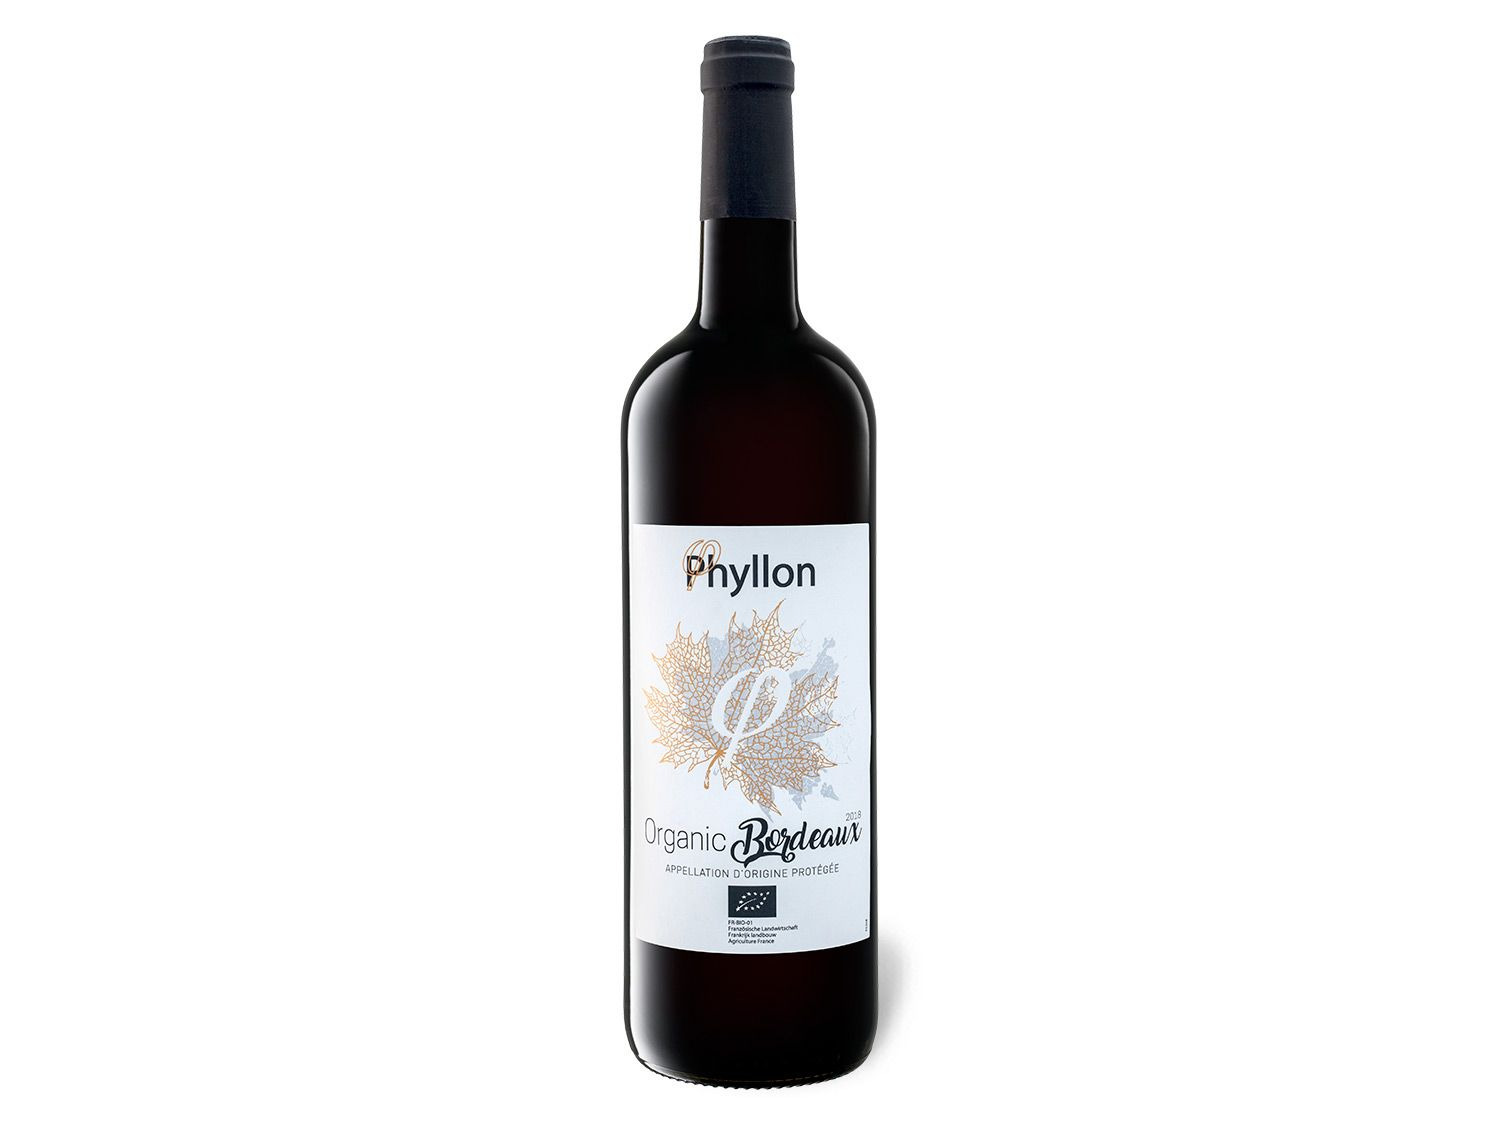 BIO Phyllon Organic trocken, Bordeaux Rotwein 2018 AOP